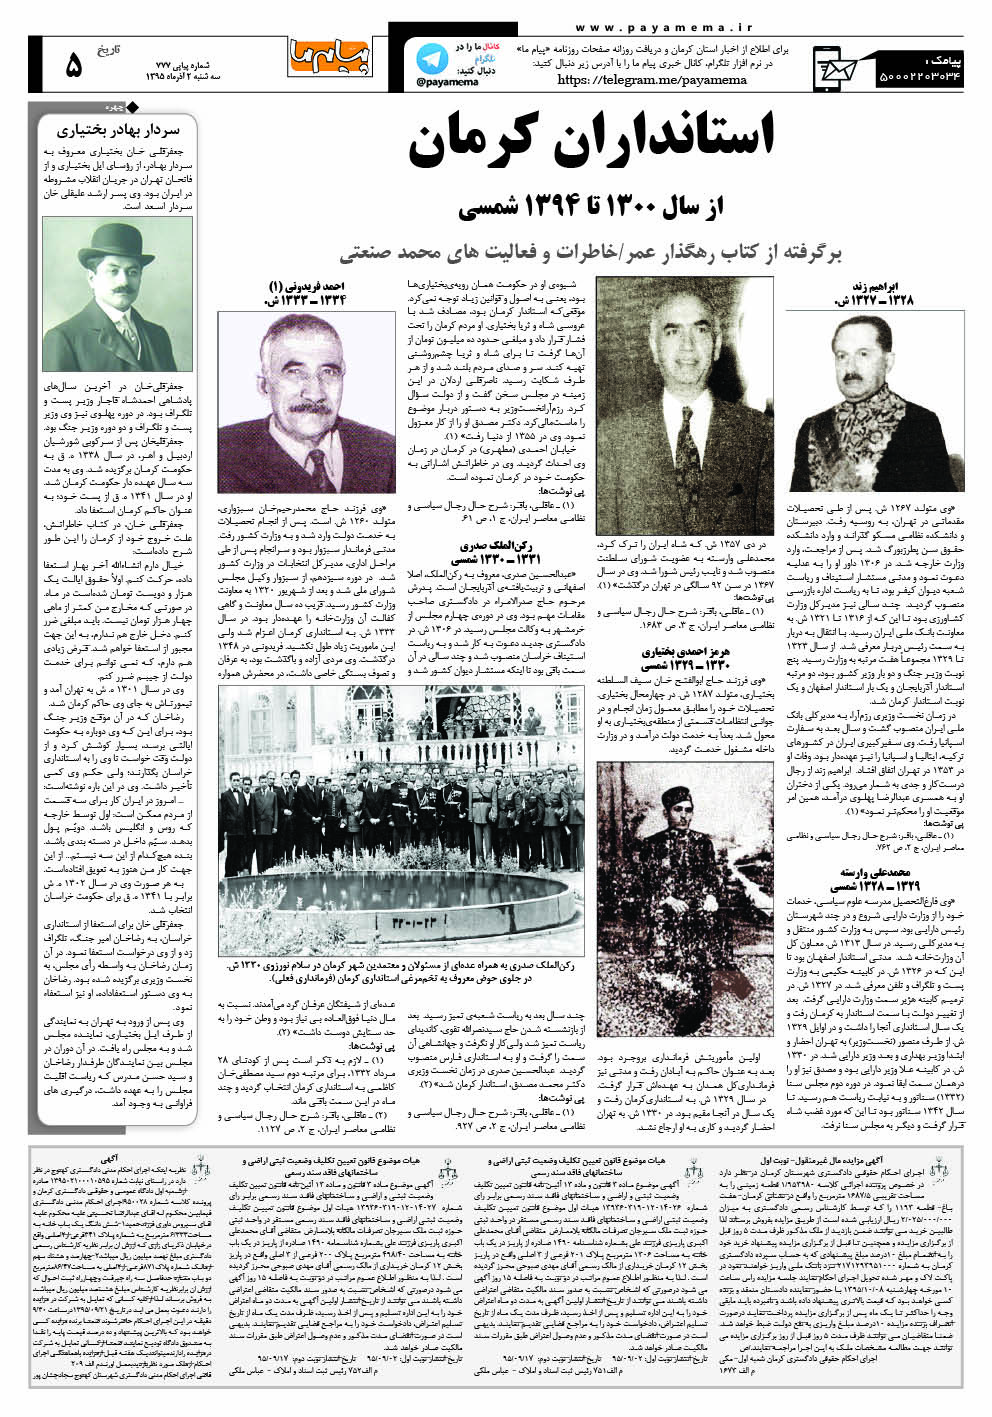 صفحه تاریخ کرمان شماره 777 روزنامه پیام ما